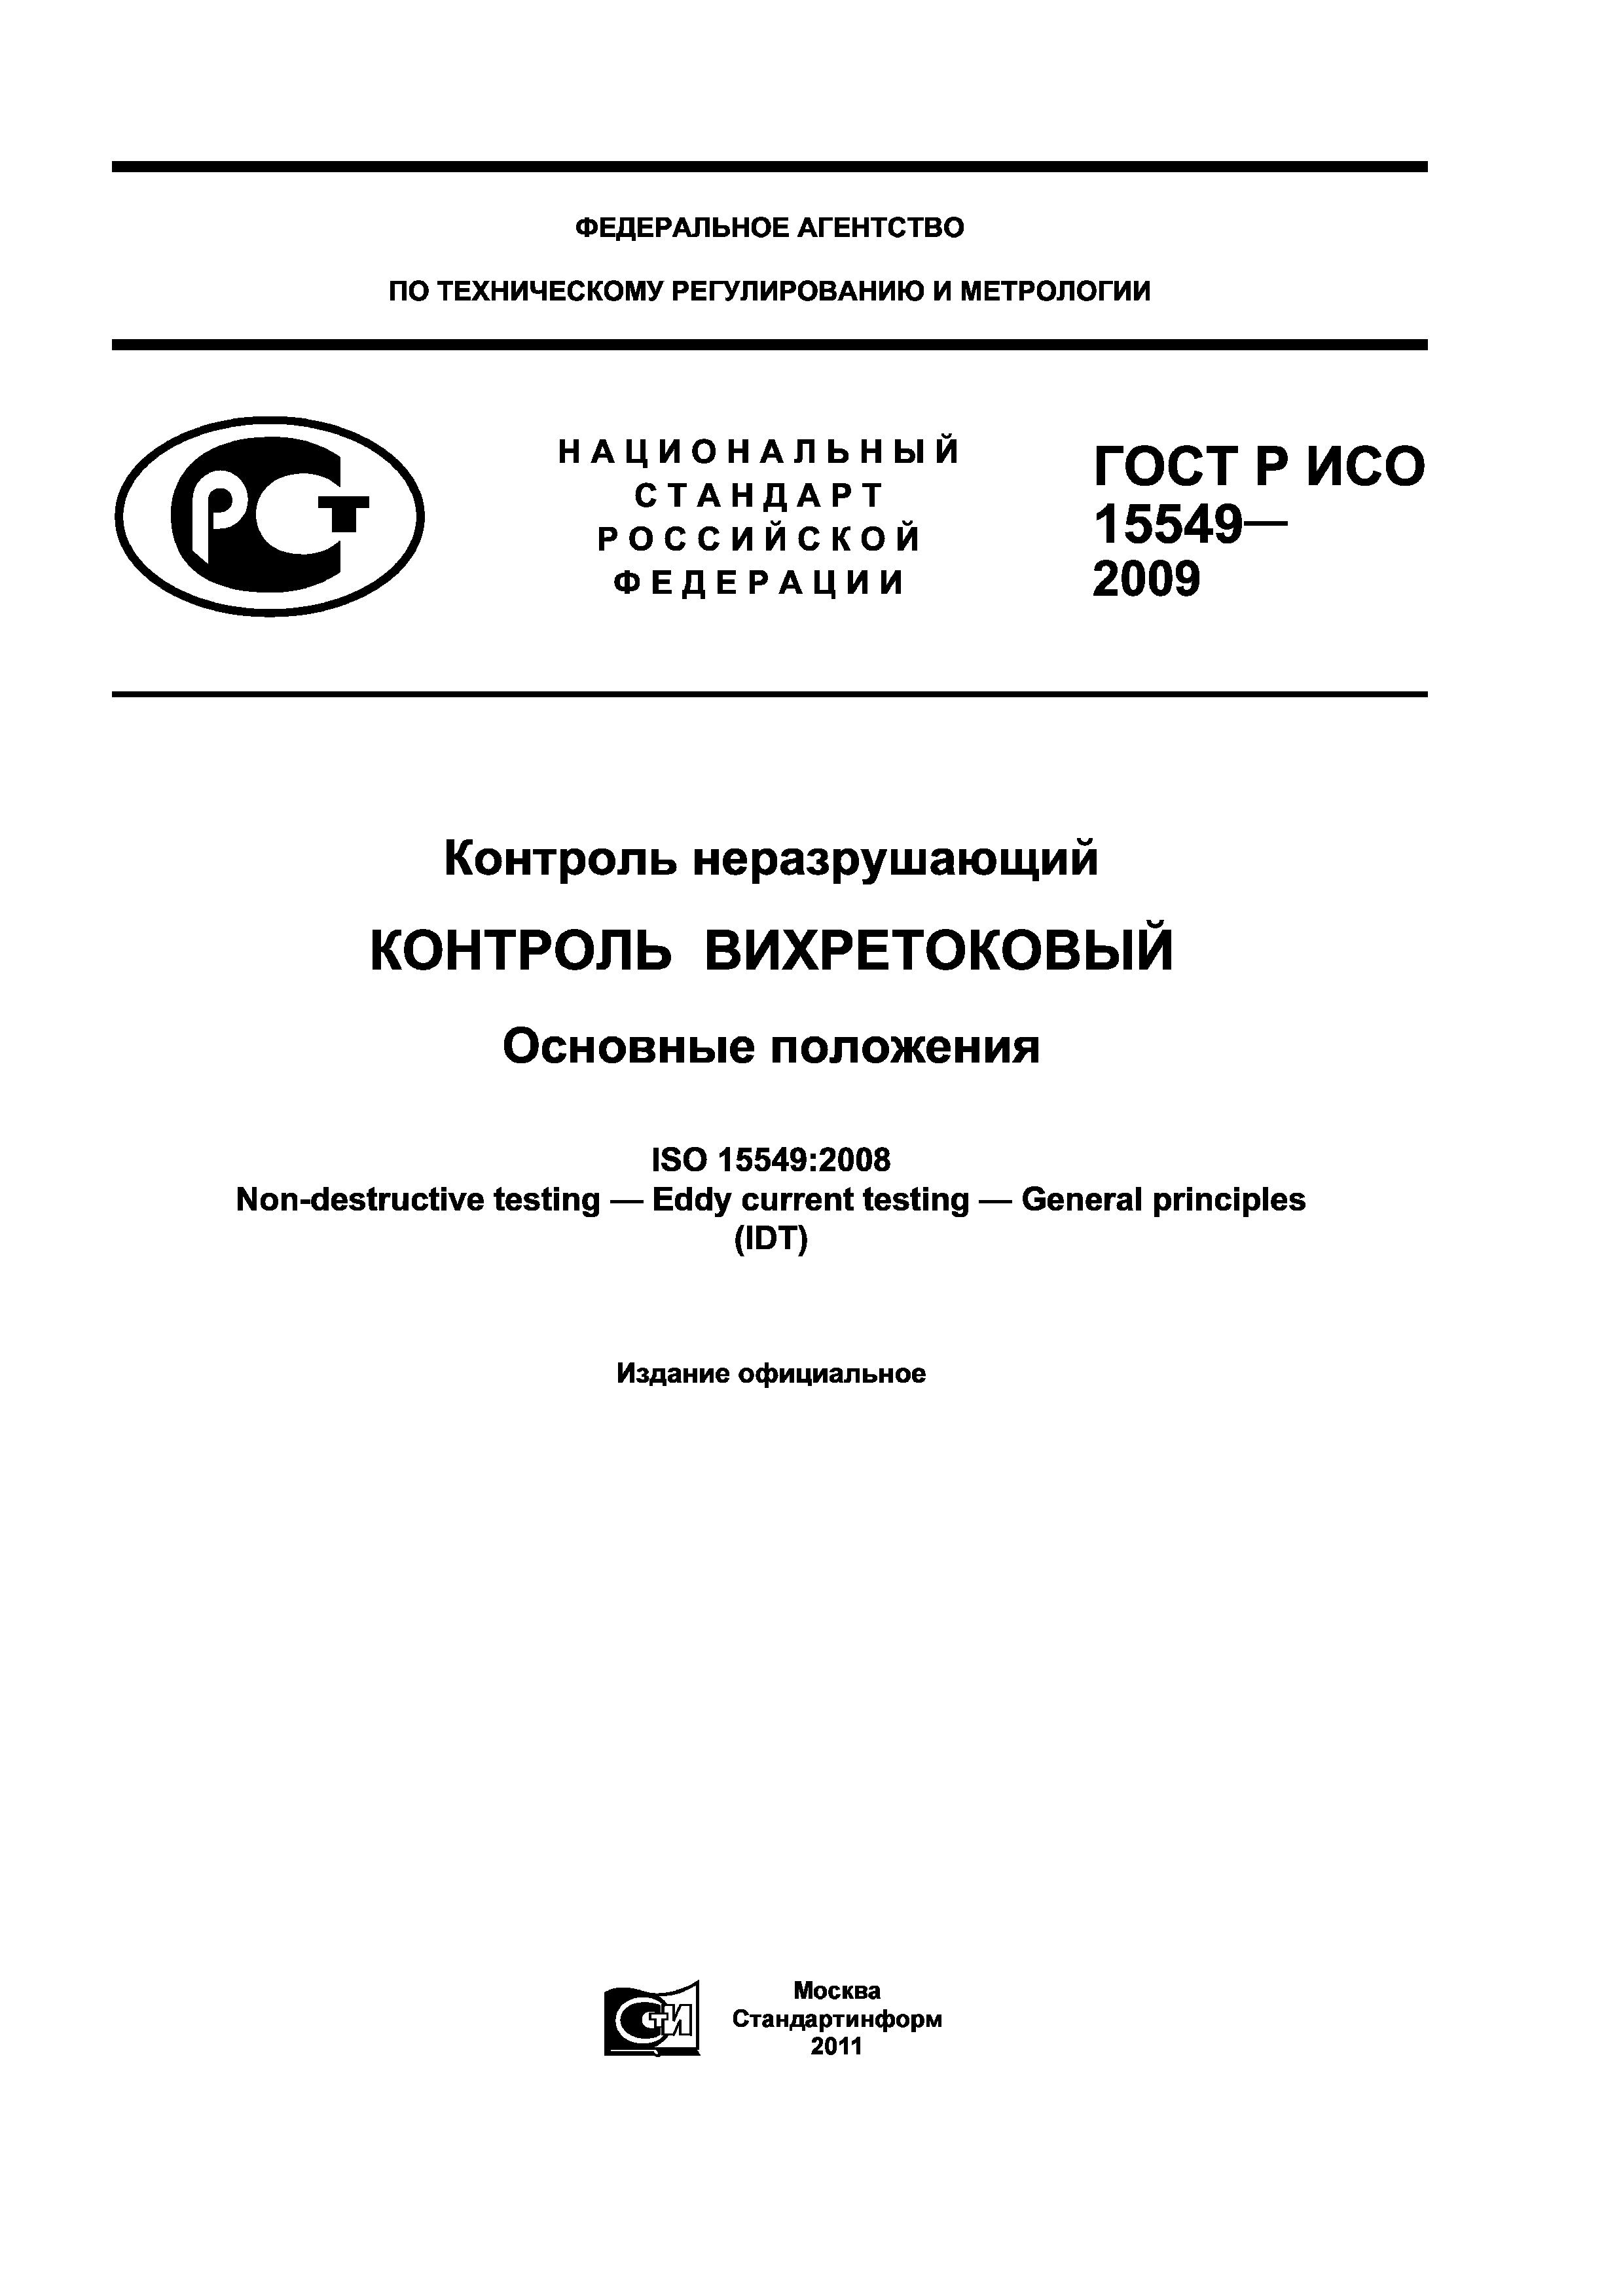 ГОСТ Р ИСО 15549-2009